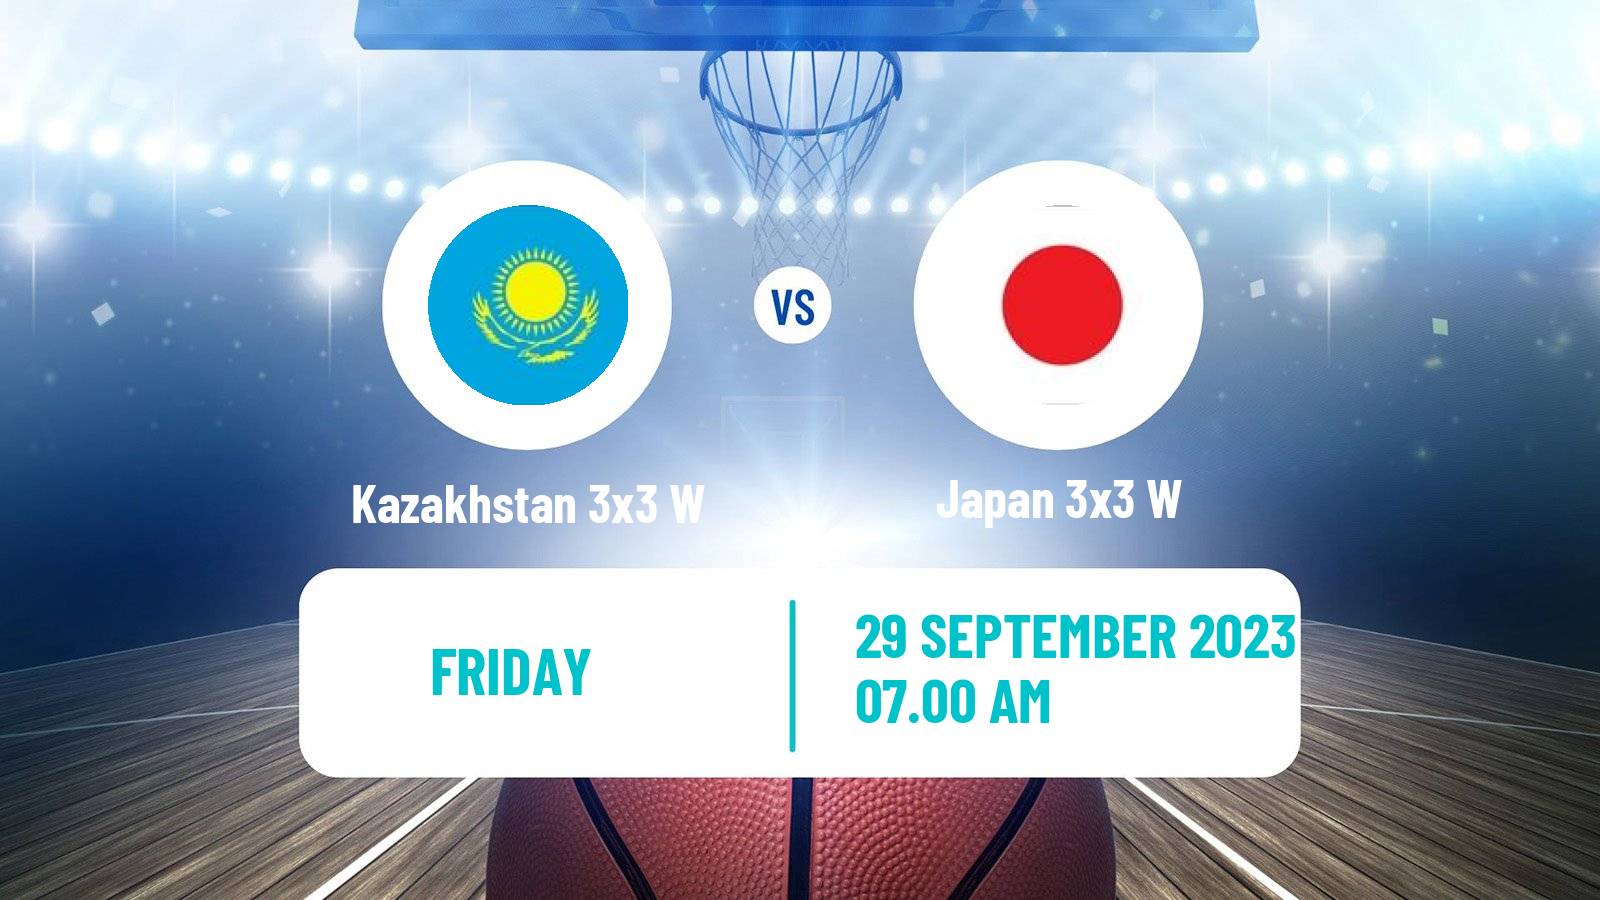 Basketball Asian Games Basketball 3x3 Women Kazakhstan 3x3 W - Japan 3x3 W